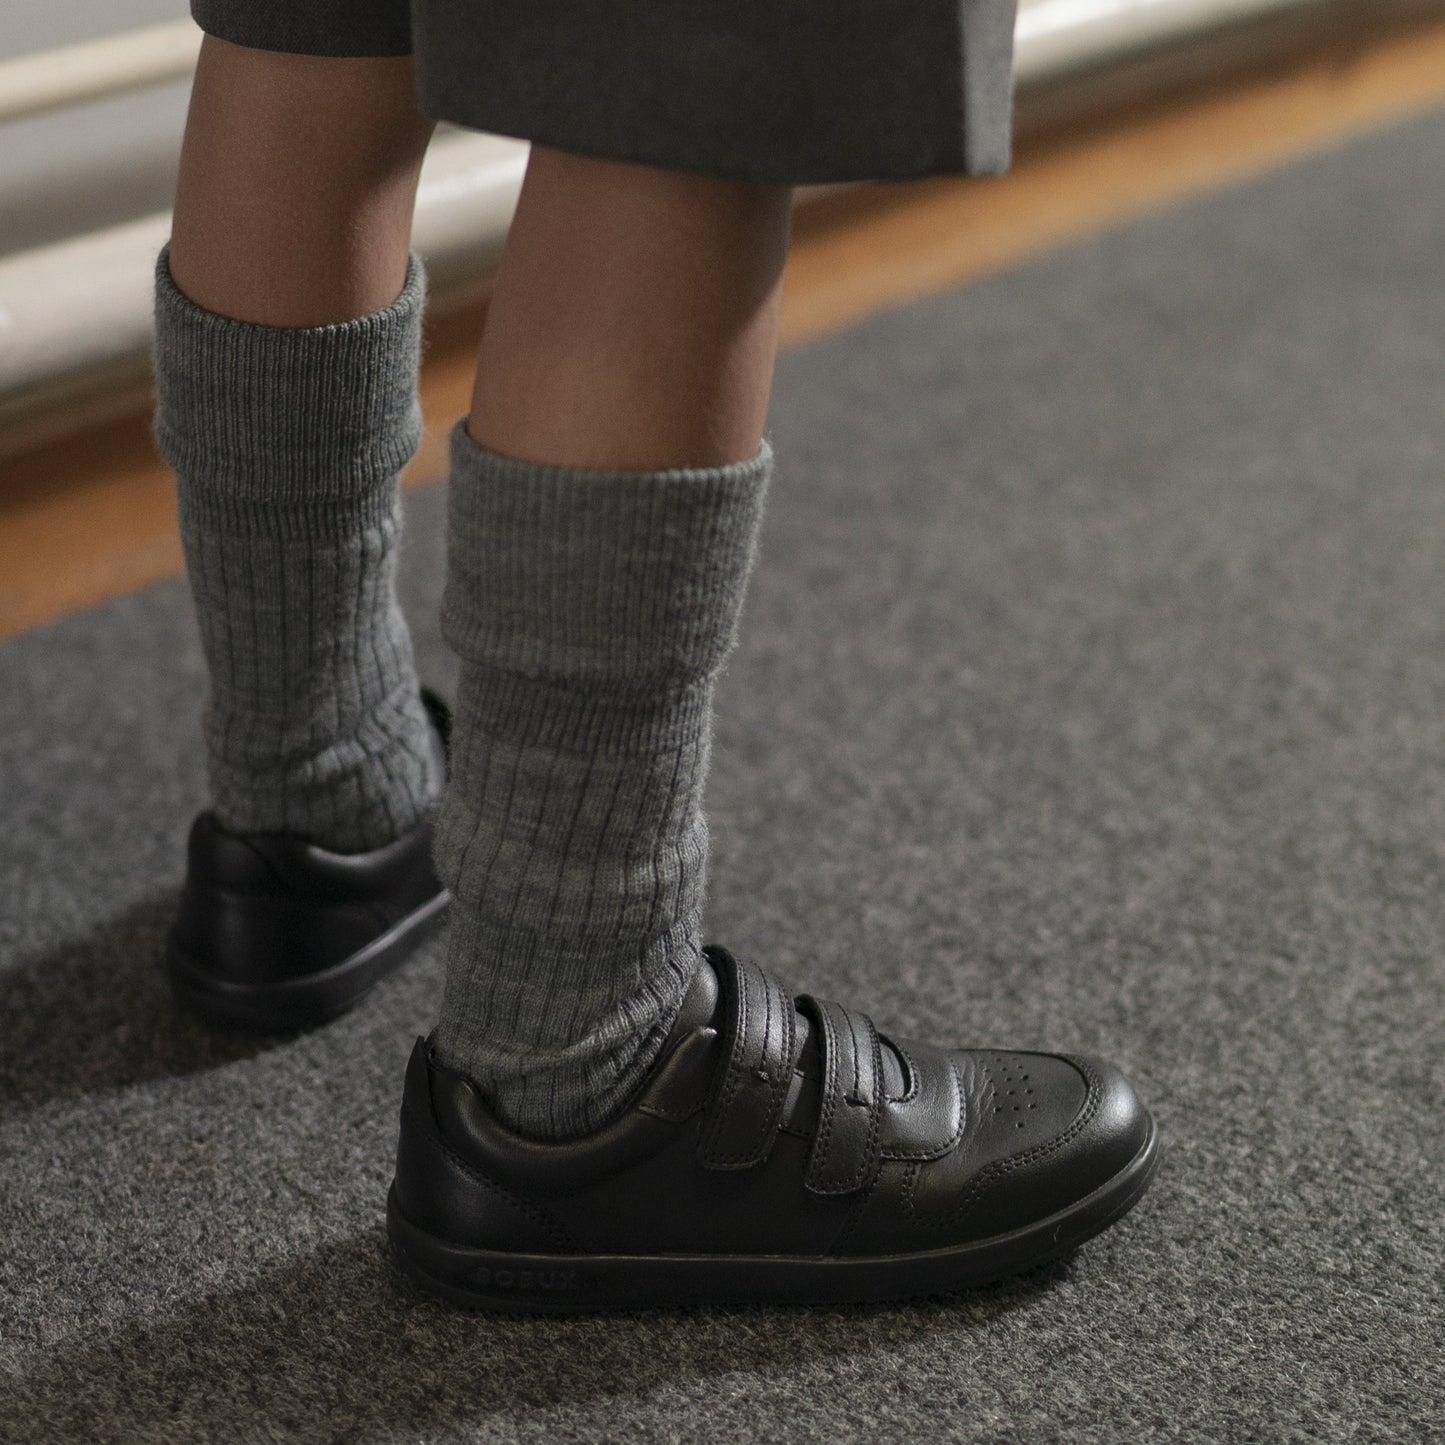 Bobux Kids Plus Leap Black School Shoe in use 3